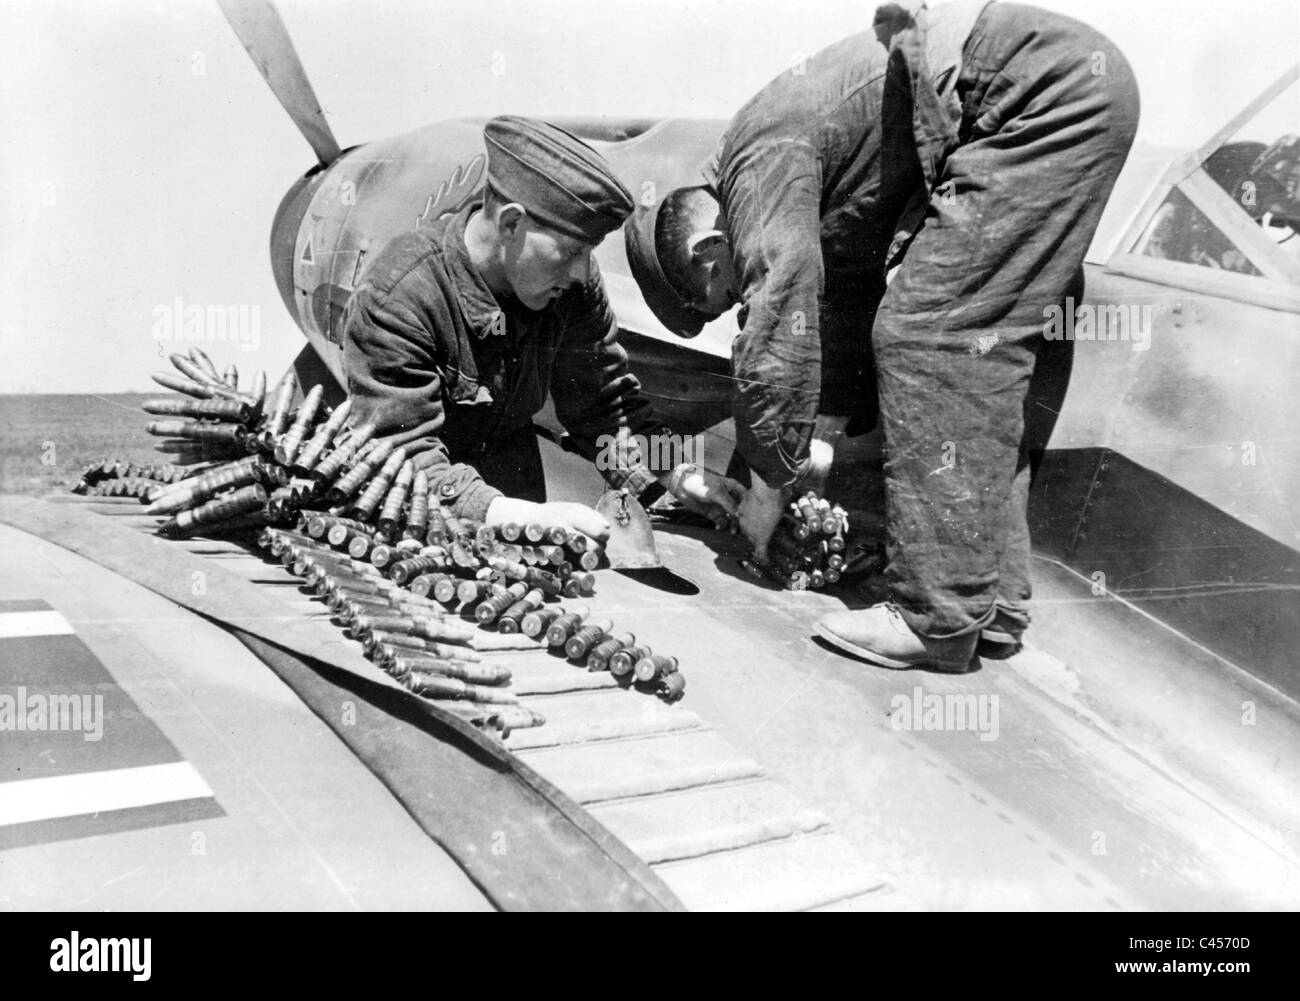 Le personnel au sol de munitions rechargement dans un avion de chasse, 1942 Banque D'Images